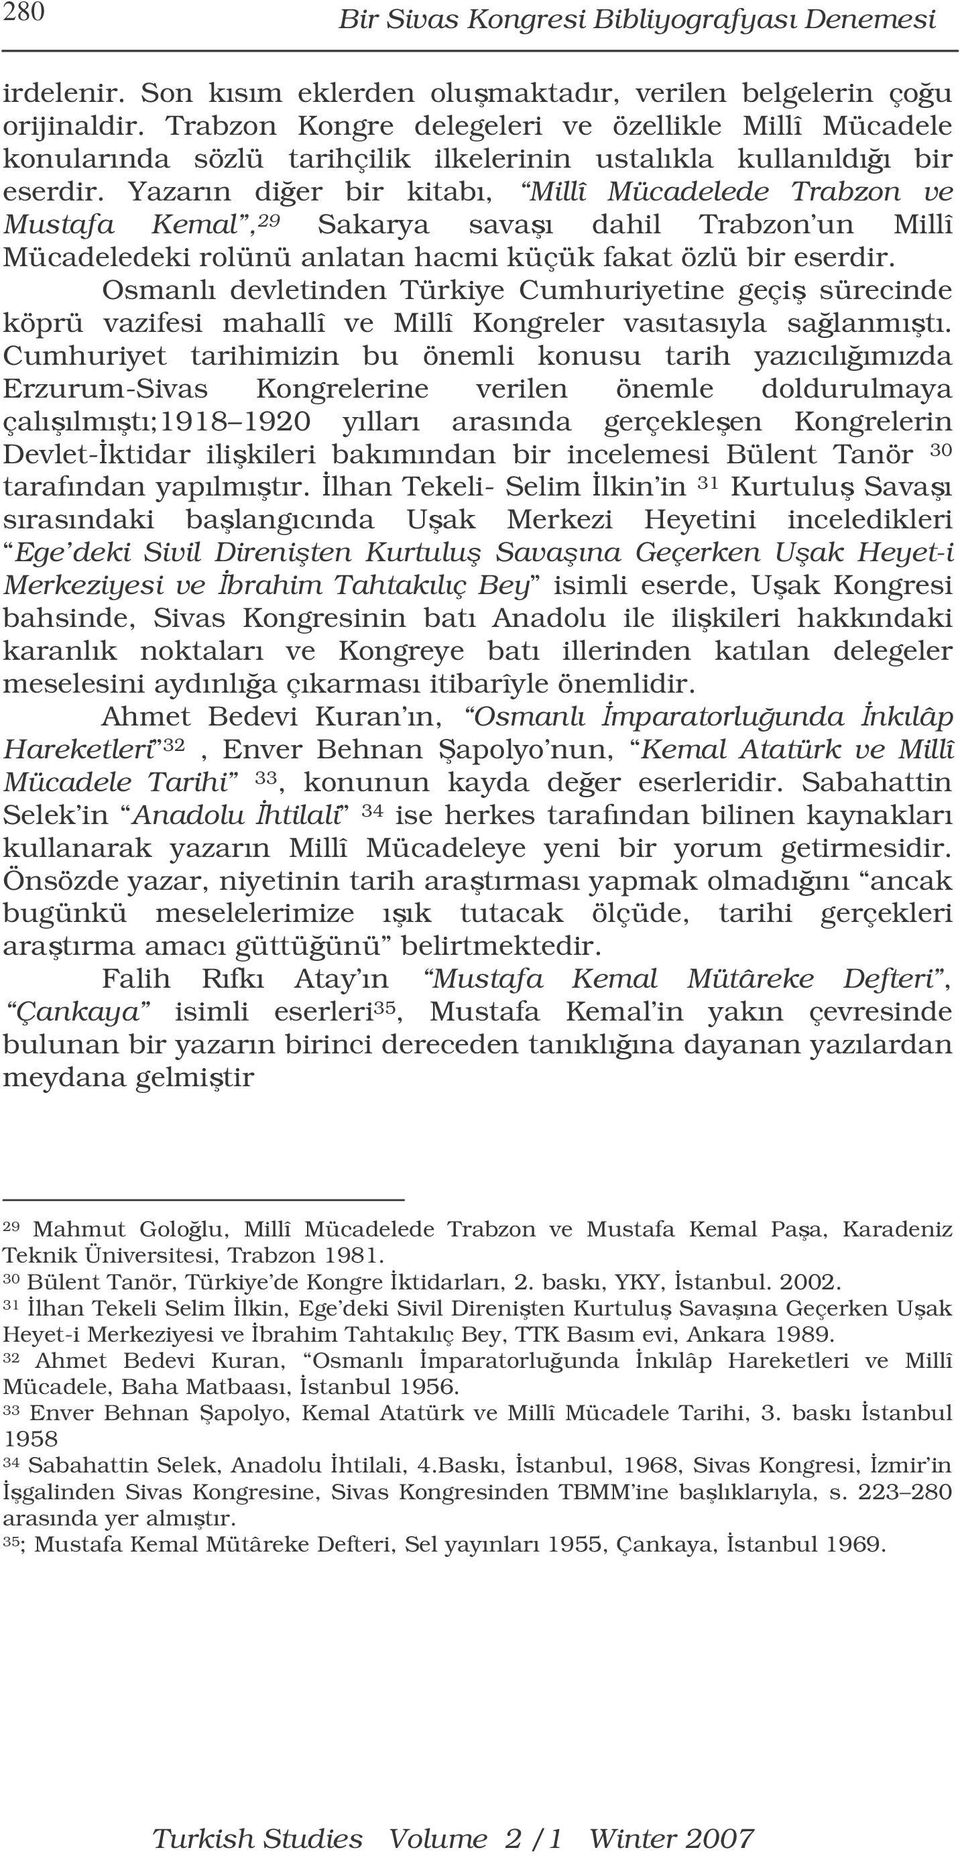 Yazarın dier bir kitabı, Millî Mücadelede Trabzon ve Mustafa Kemal, 29 Sakarya savaı dahil Trabzon un Millî Mücadeledeki rolünü anlatan hacmi küçük fakat özlü bir eserdir.